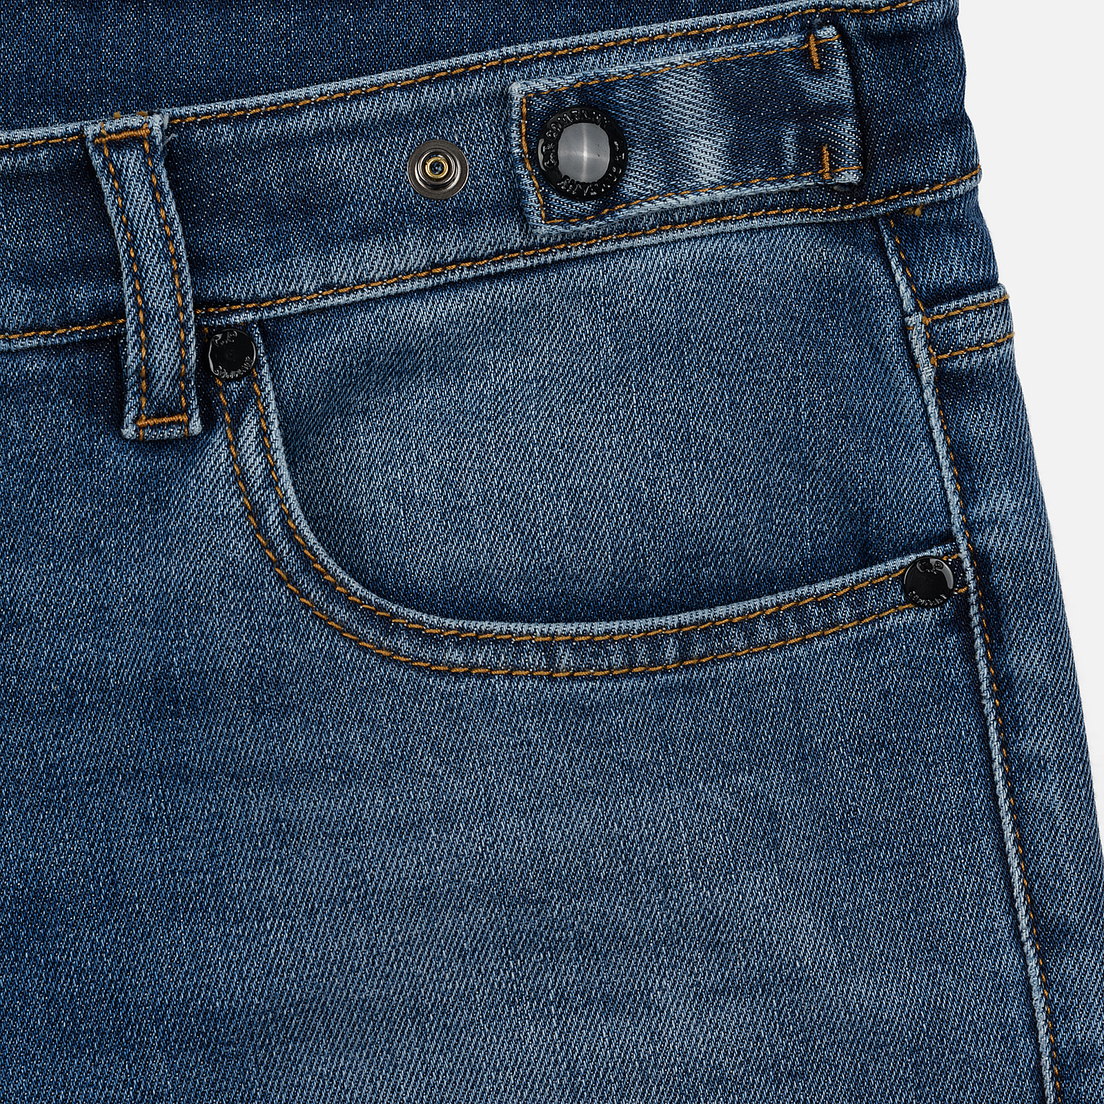 C.P. Company Мужские джинсы Regular Fit Five Pockets